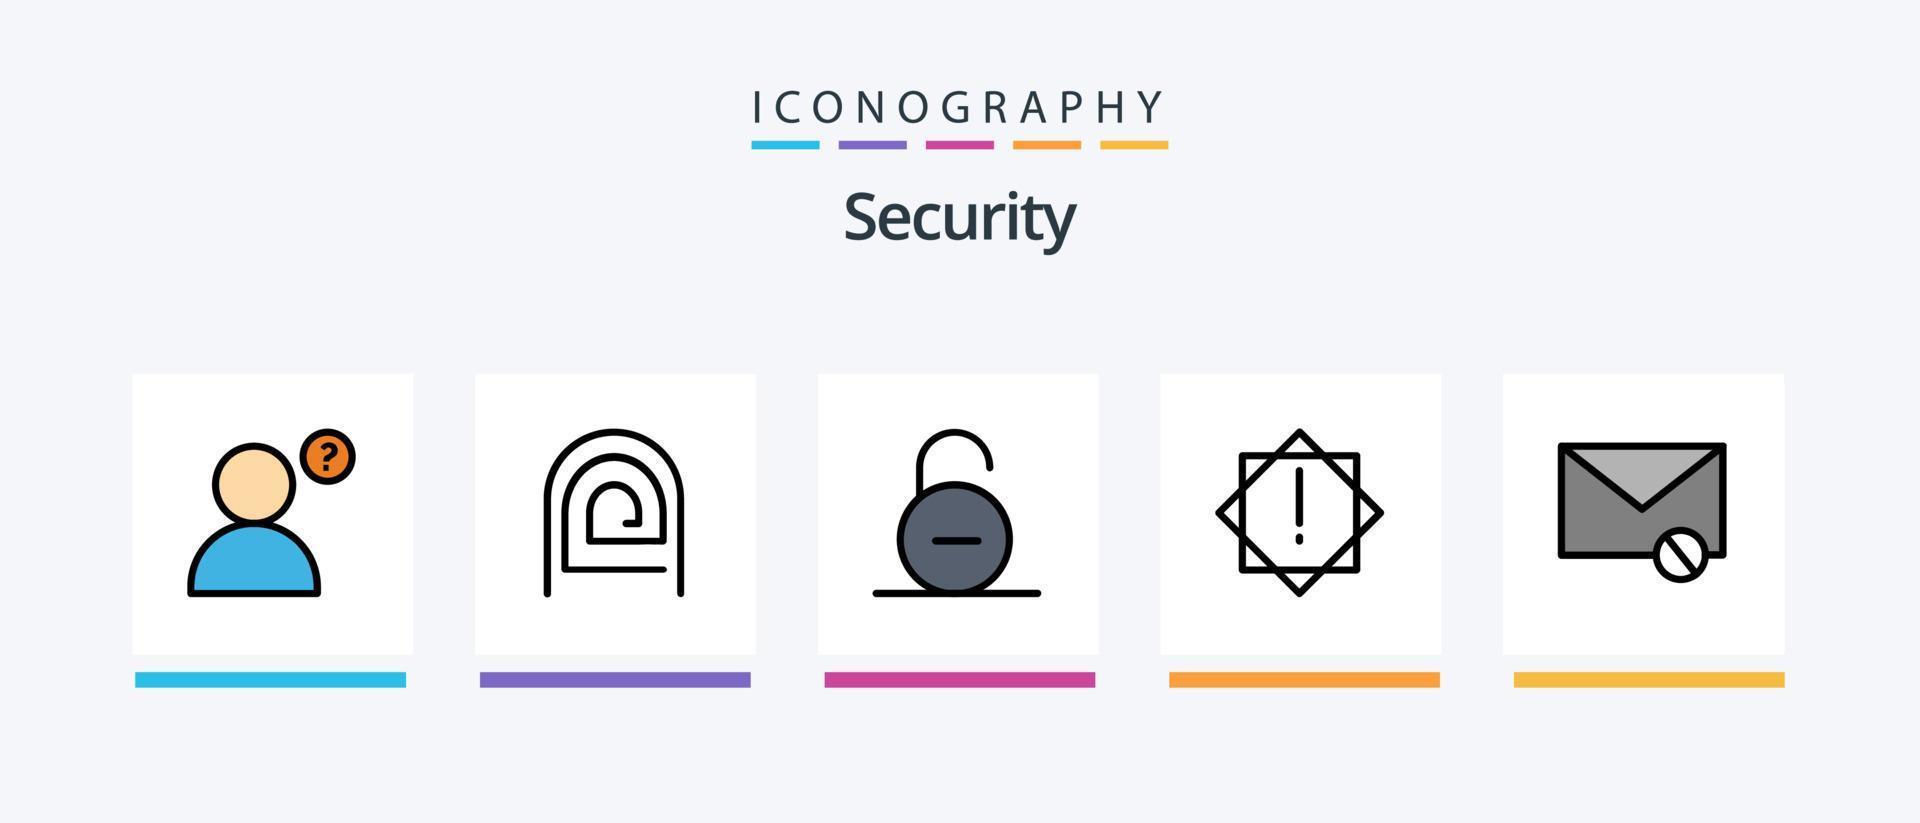 la línea de seguridad llenó el paquete de 5 iconos, incluida la seguridad. cerrar. correo. seguridad. cerrar. diseño de iconos creativos vector